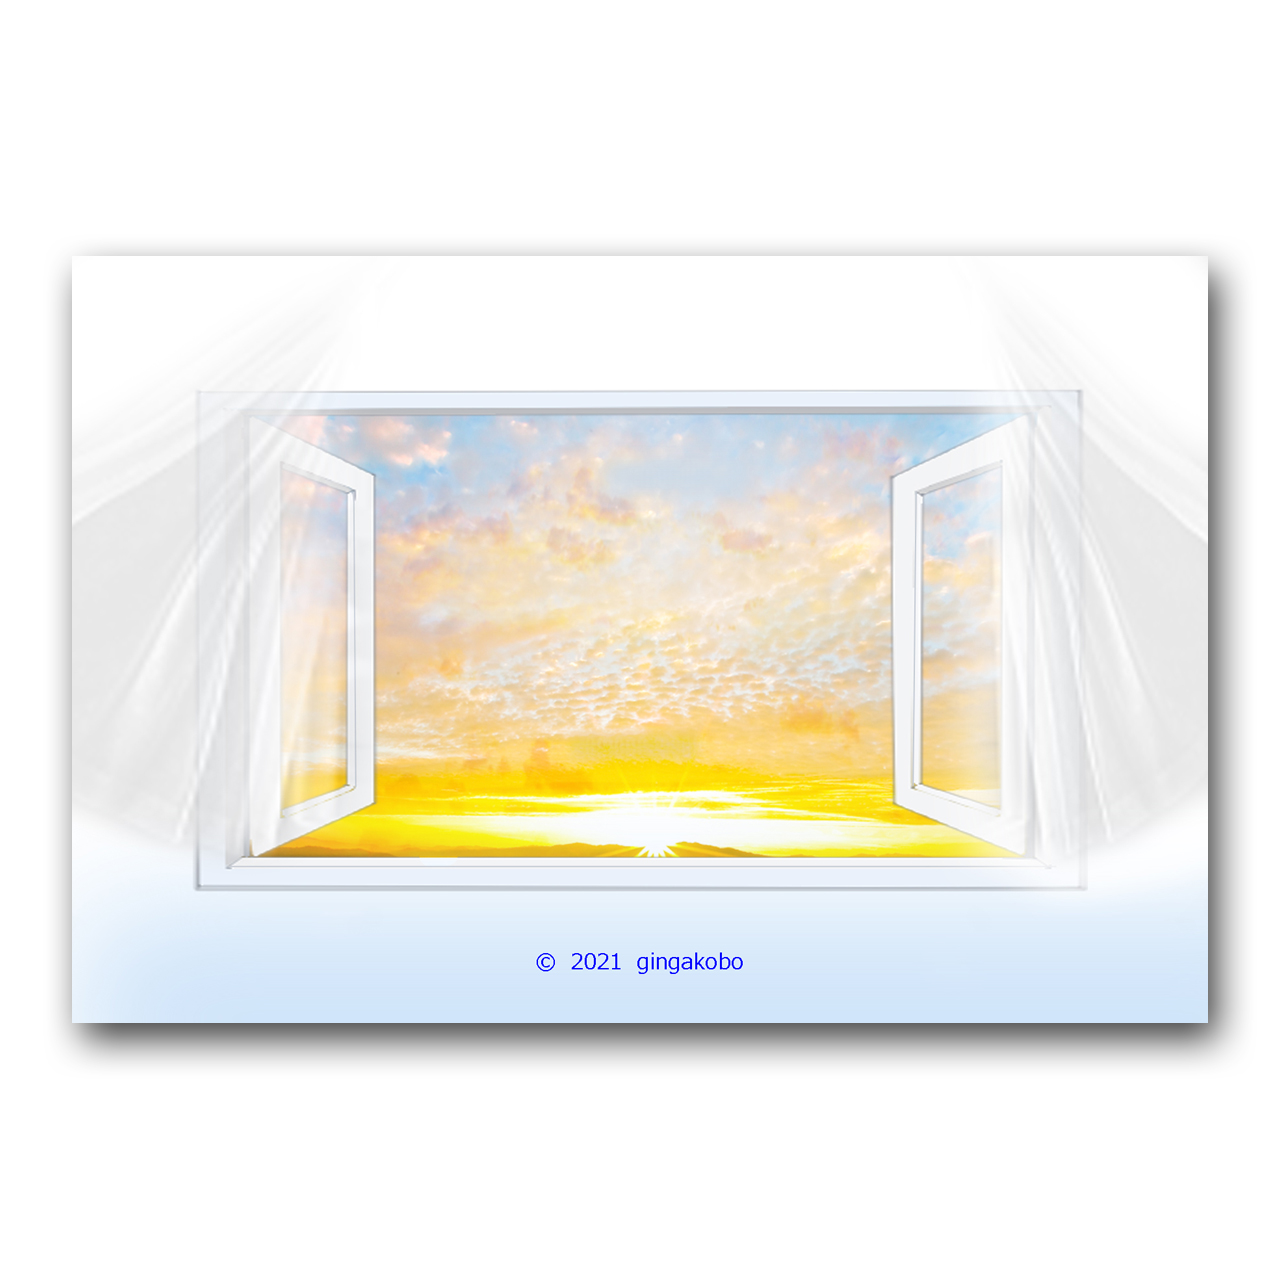 朝だから窓 開けるよー 朝日 空 ほっこり癒しのイラストポストカード2枚組no 1411 Iichi ハンドメイド クラフト作品 手仕事品の通販